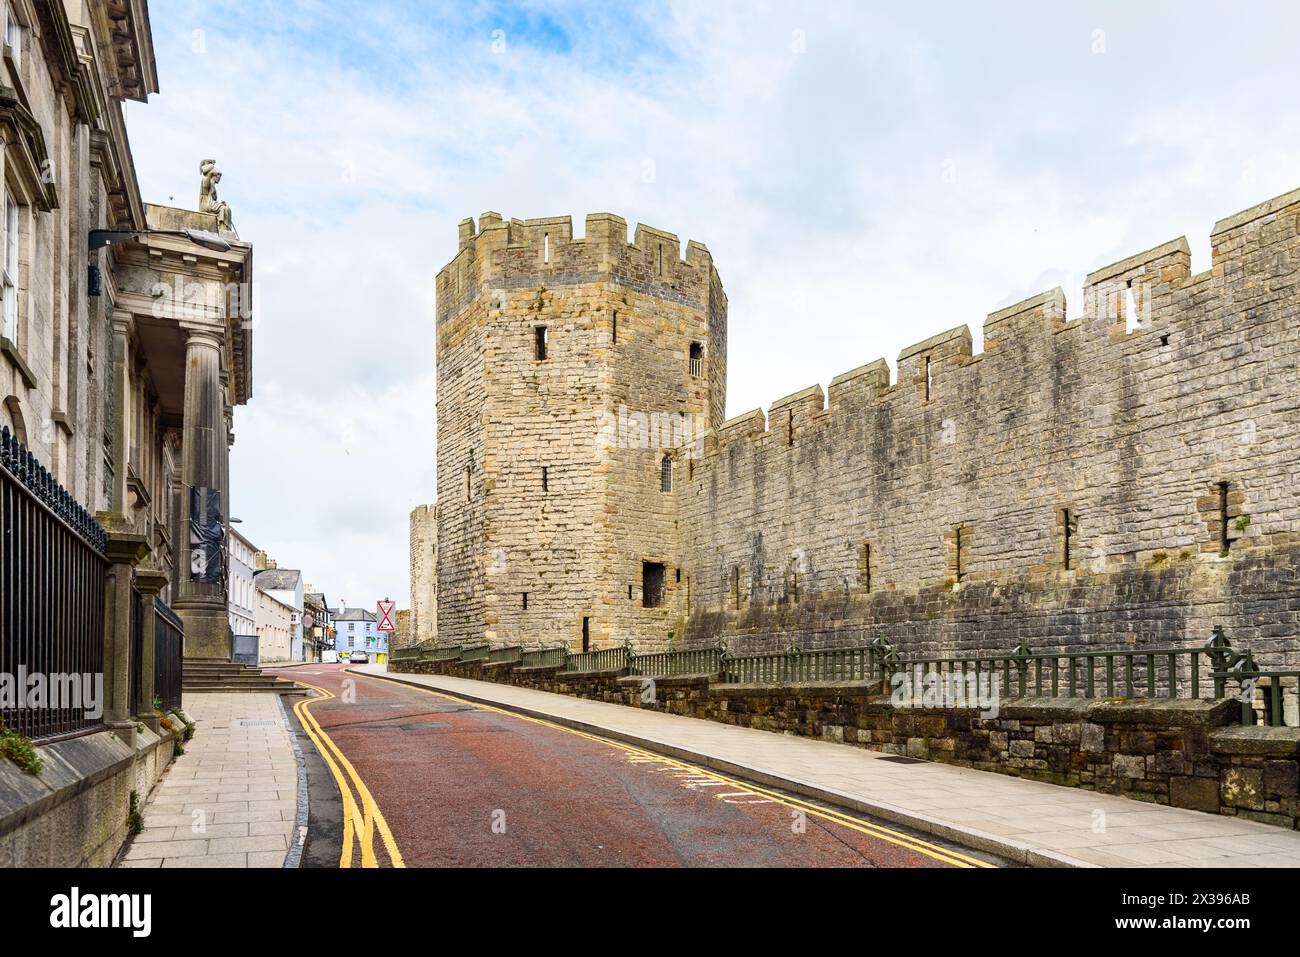 Rue déserte le long des murs d'un château historique dans une petite ville du pays de Galles Banque D'Images